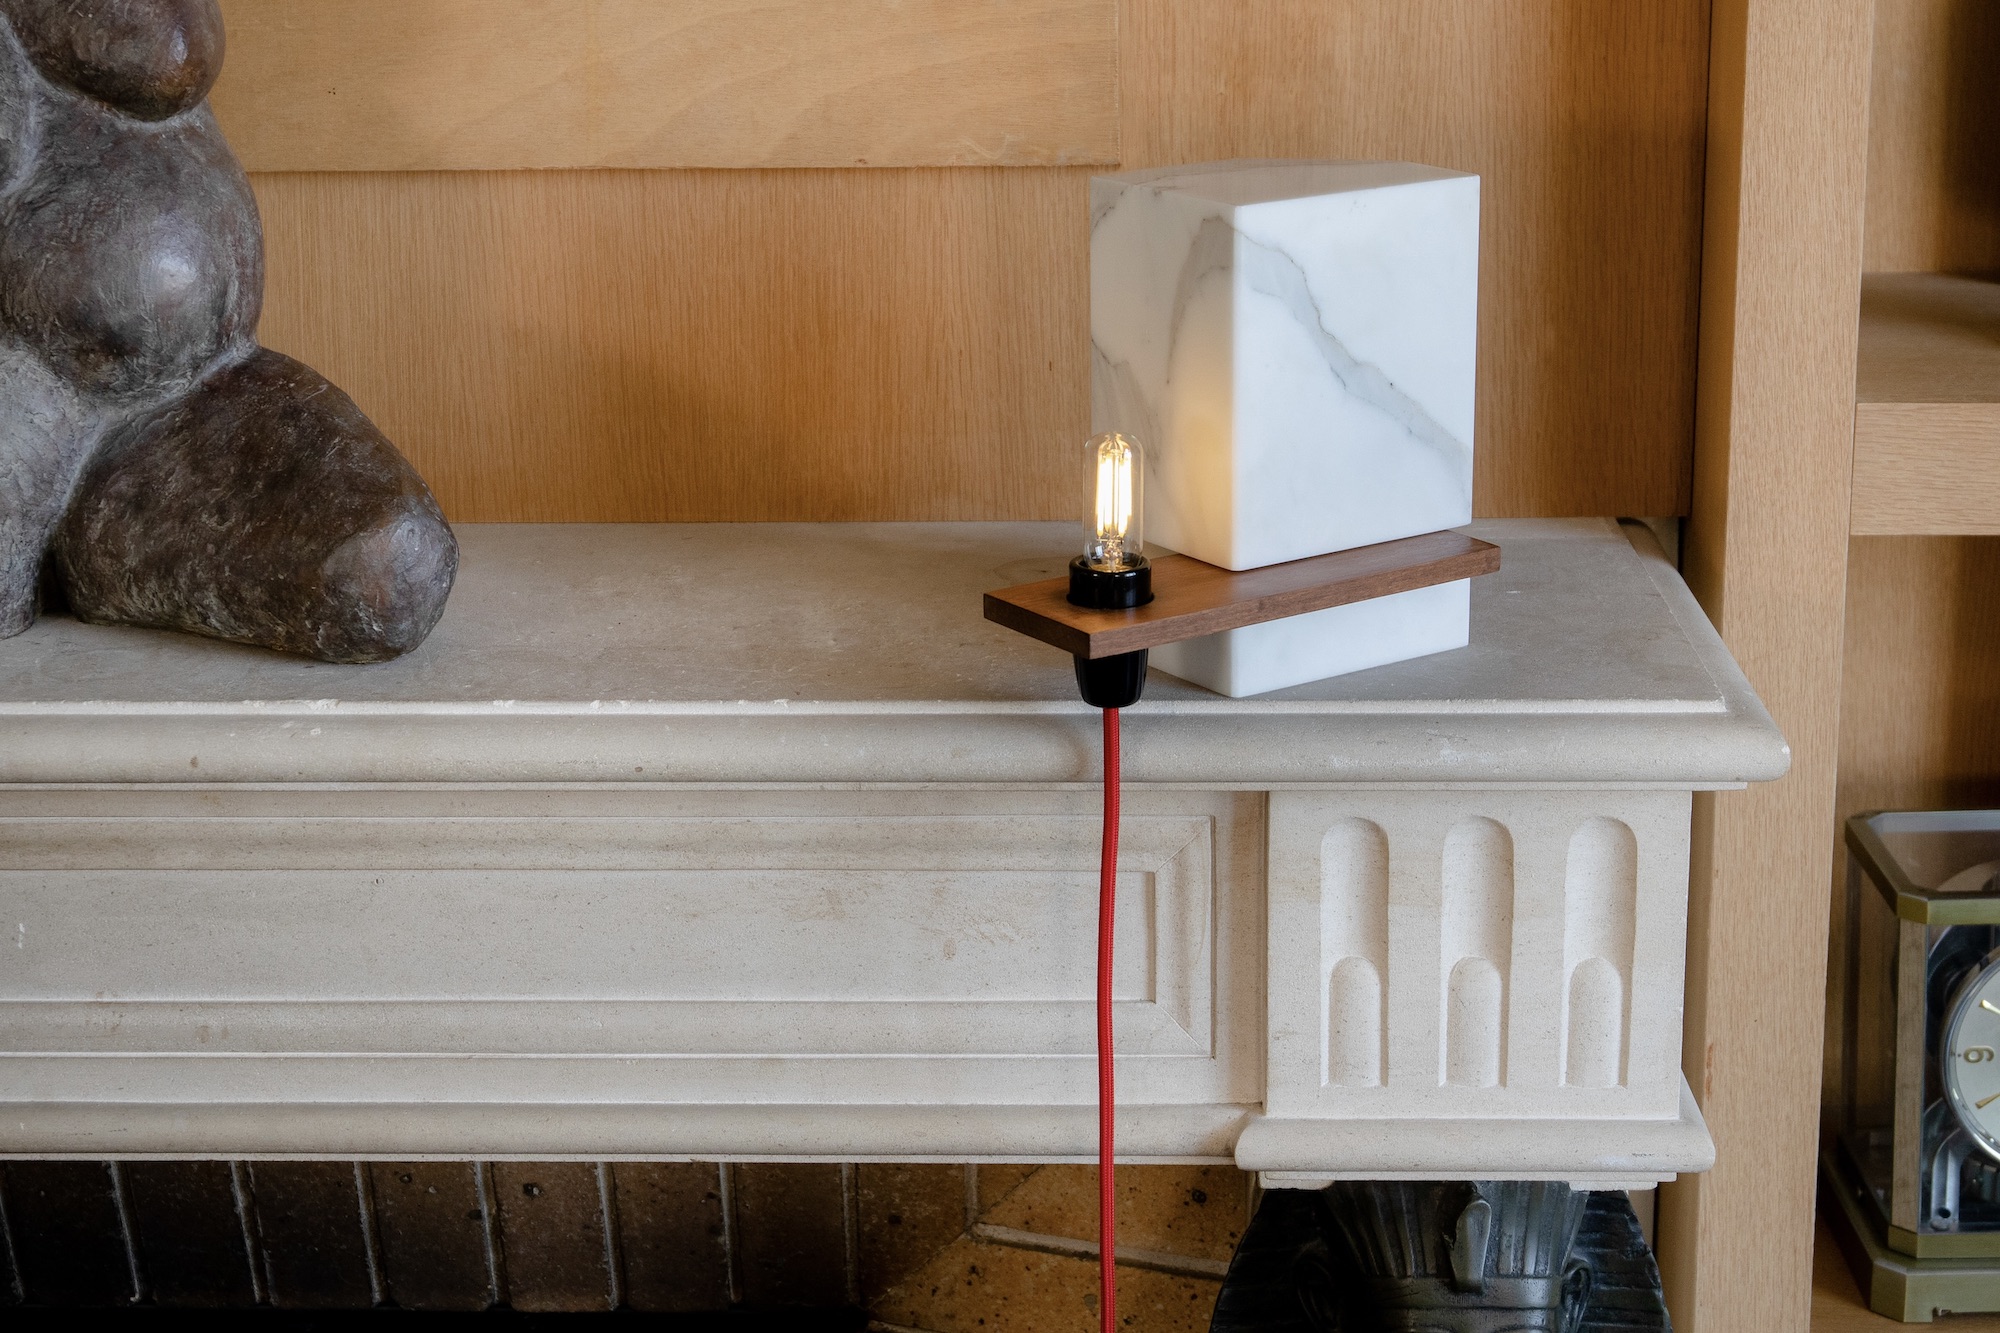 lampe une p&r arnaud pohl pr marbre carrare bois variable salon chambre bureau